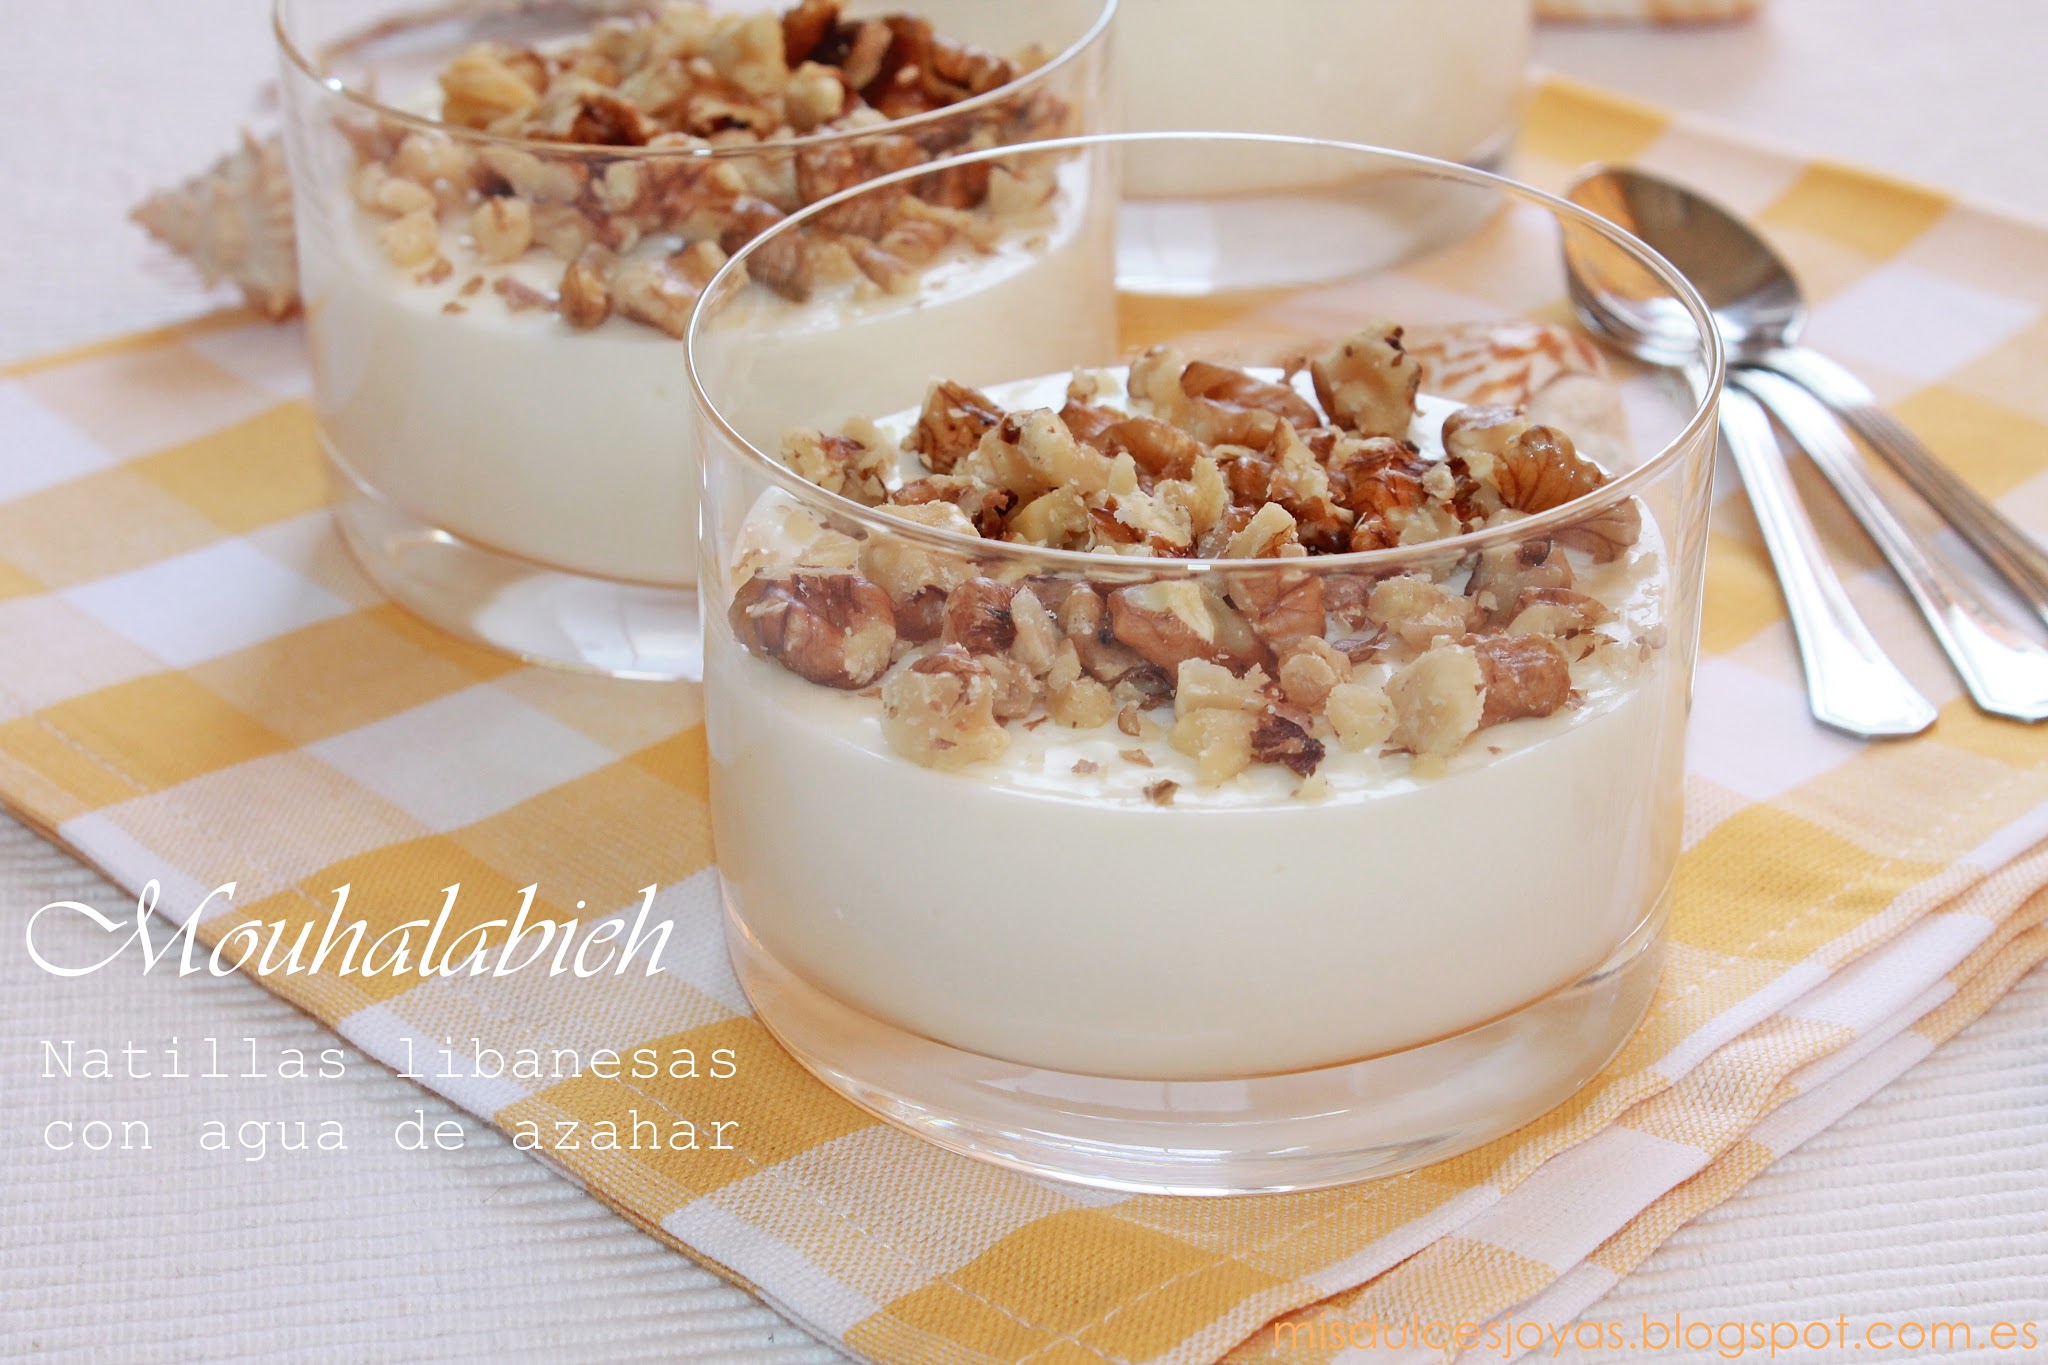 Mouhalabieh - Natillas libanesas con agua de azahar (receta sin huevo) [Mis  Dulces Joyas / blog de repostería y pastelería ]